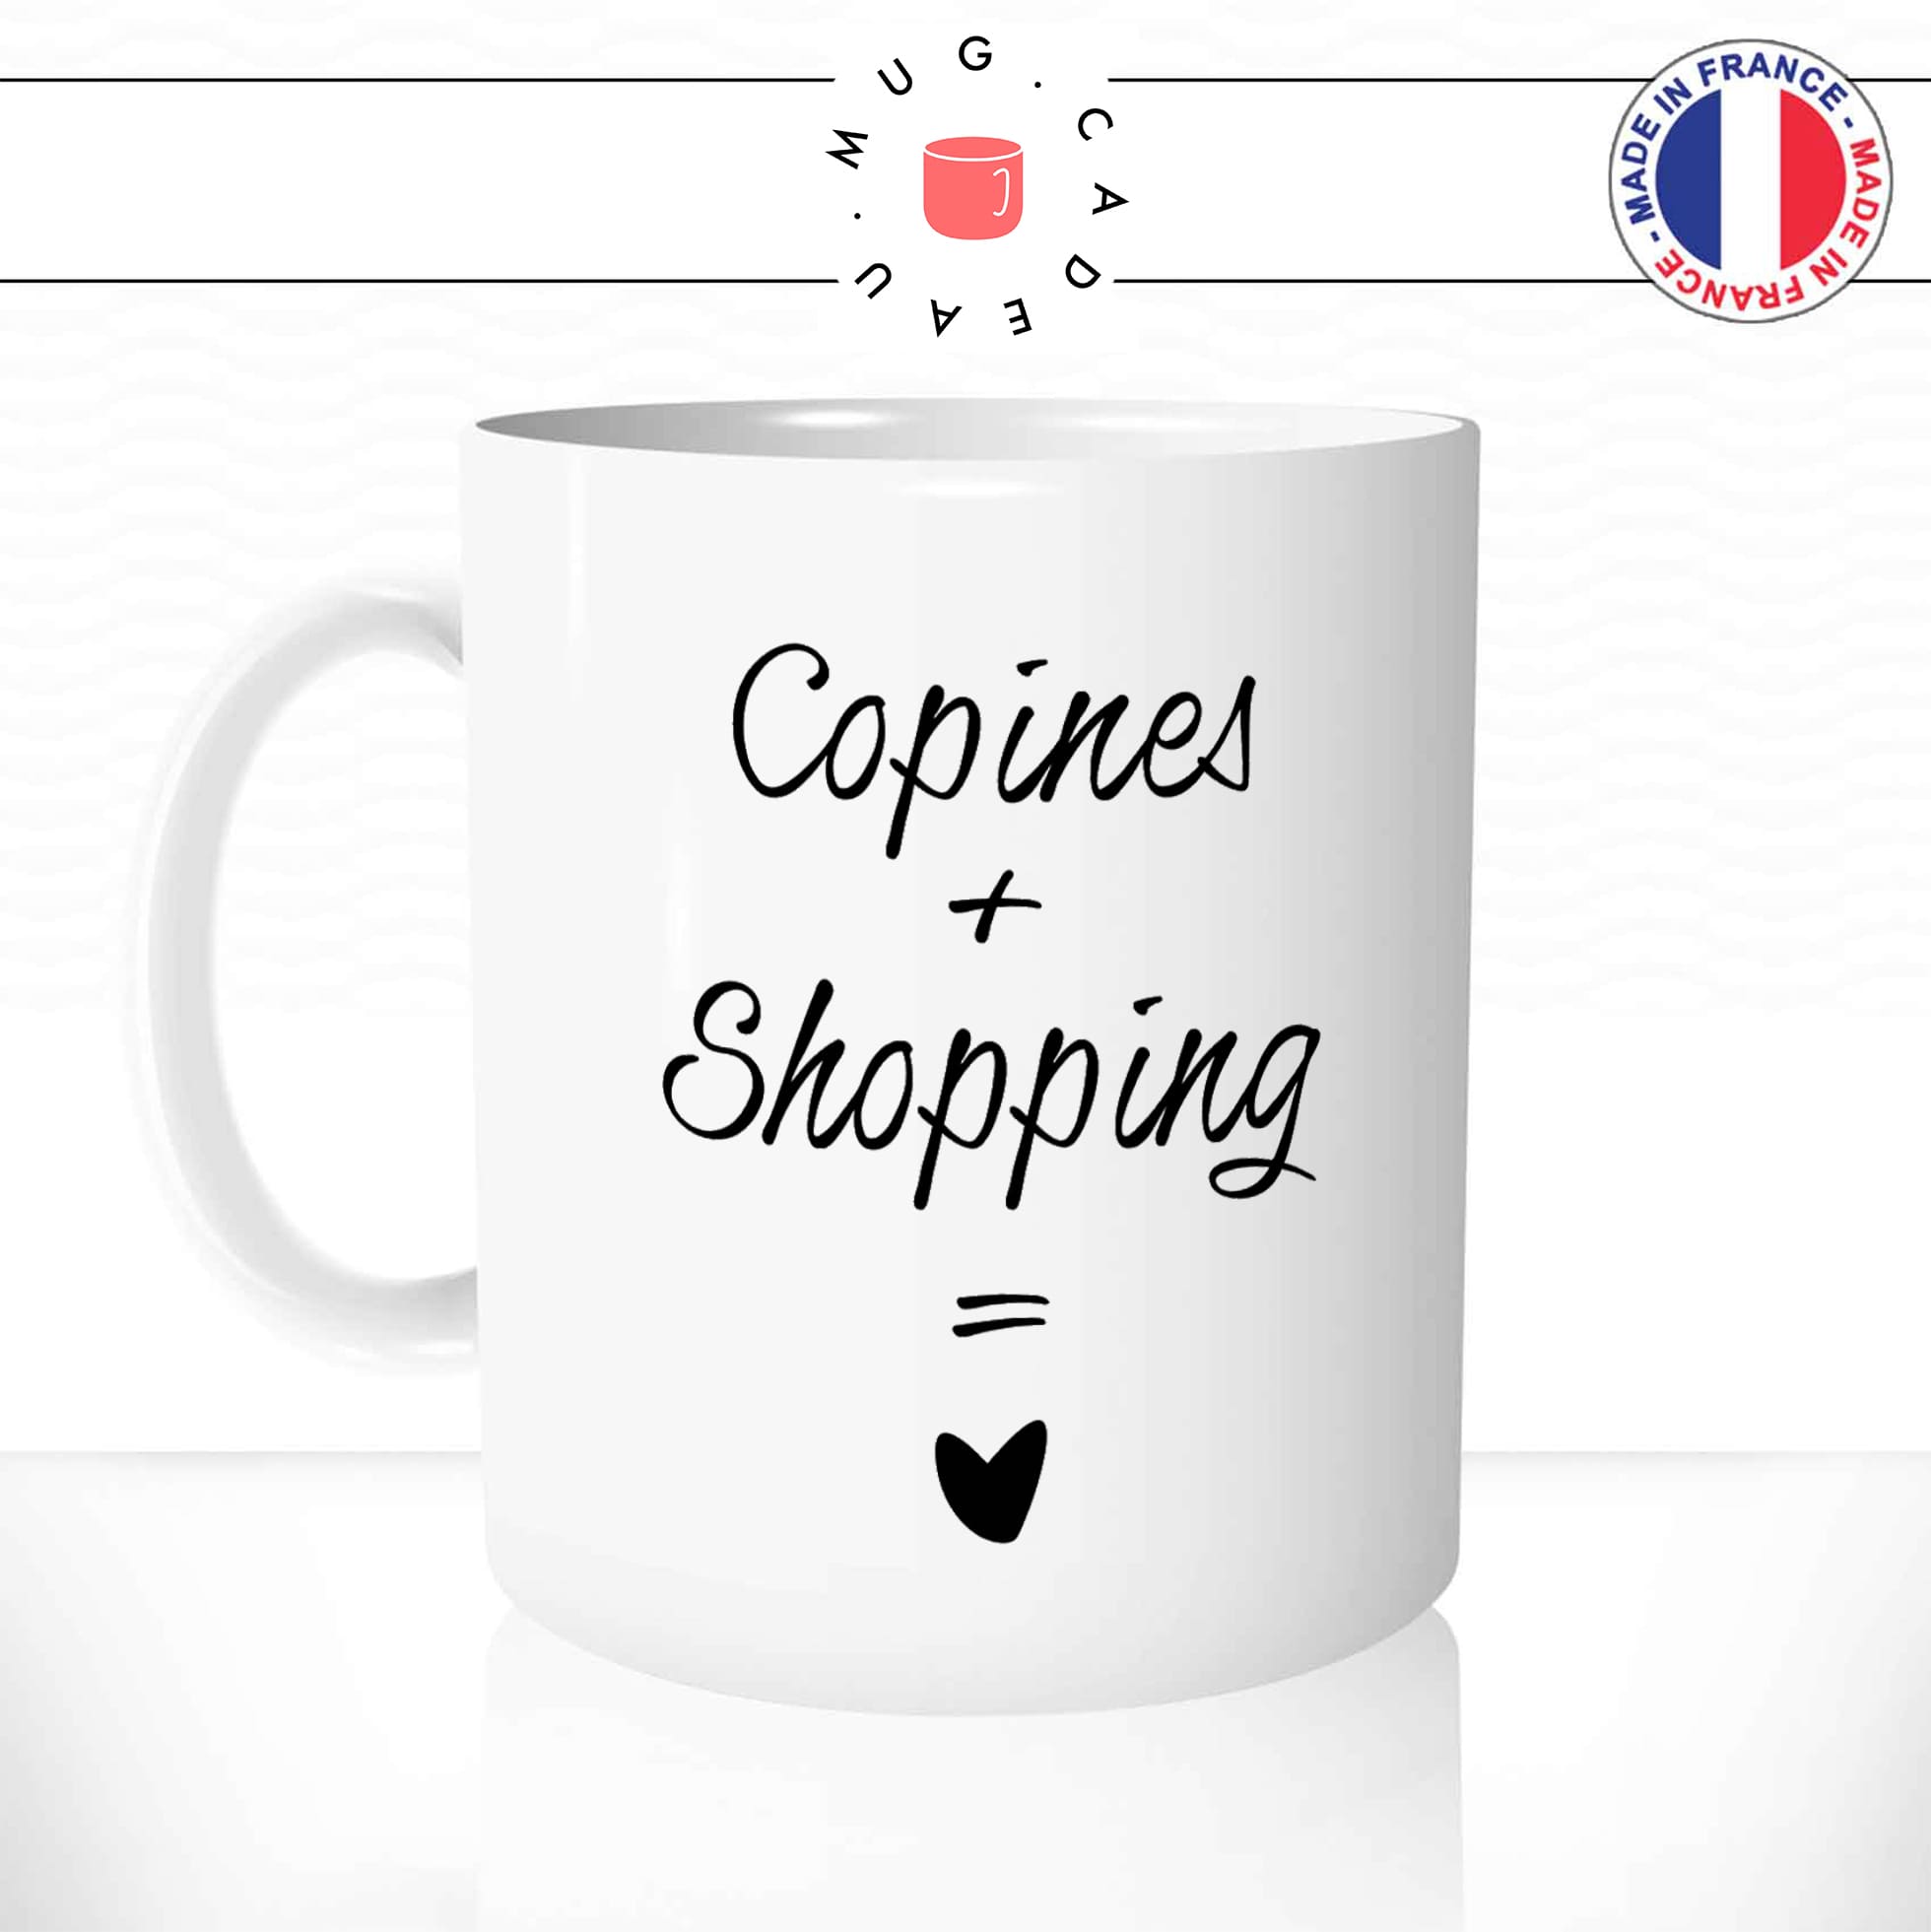 mug-tasse-blanc-unique-copines-shopping-coeur-amour-potes-filles-homme-femme-humour-fun-cool-idée-cadeau-original-personnalisé